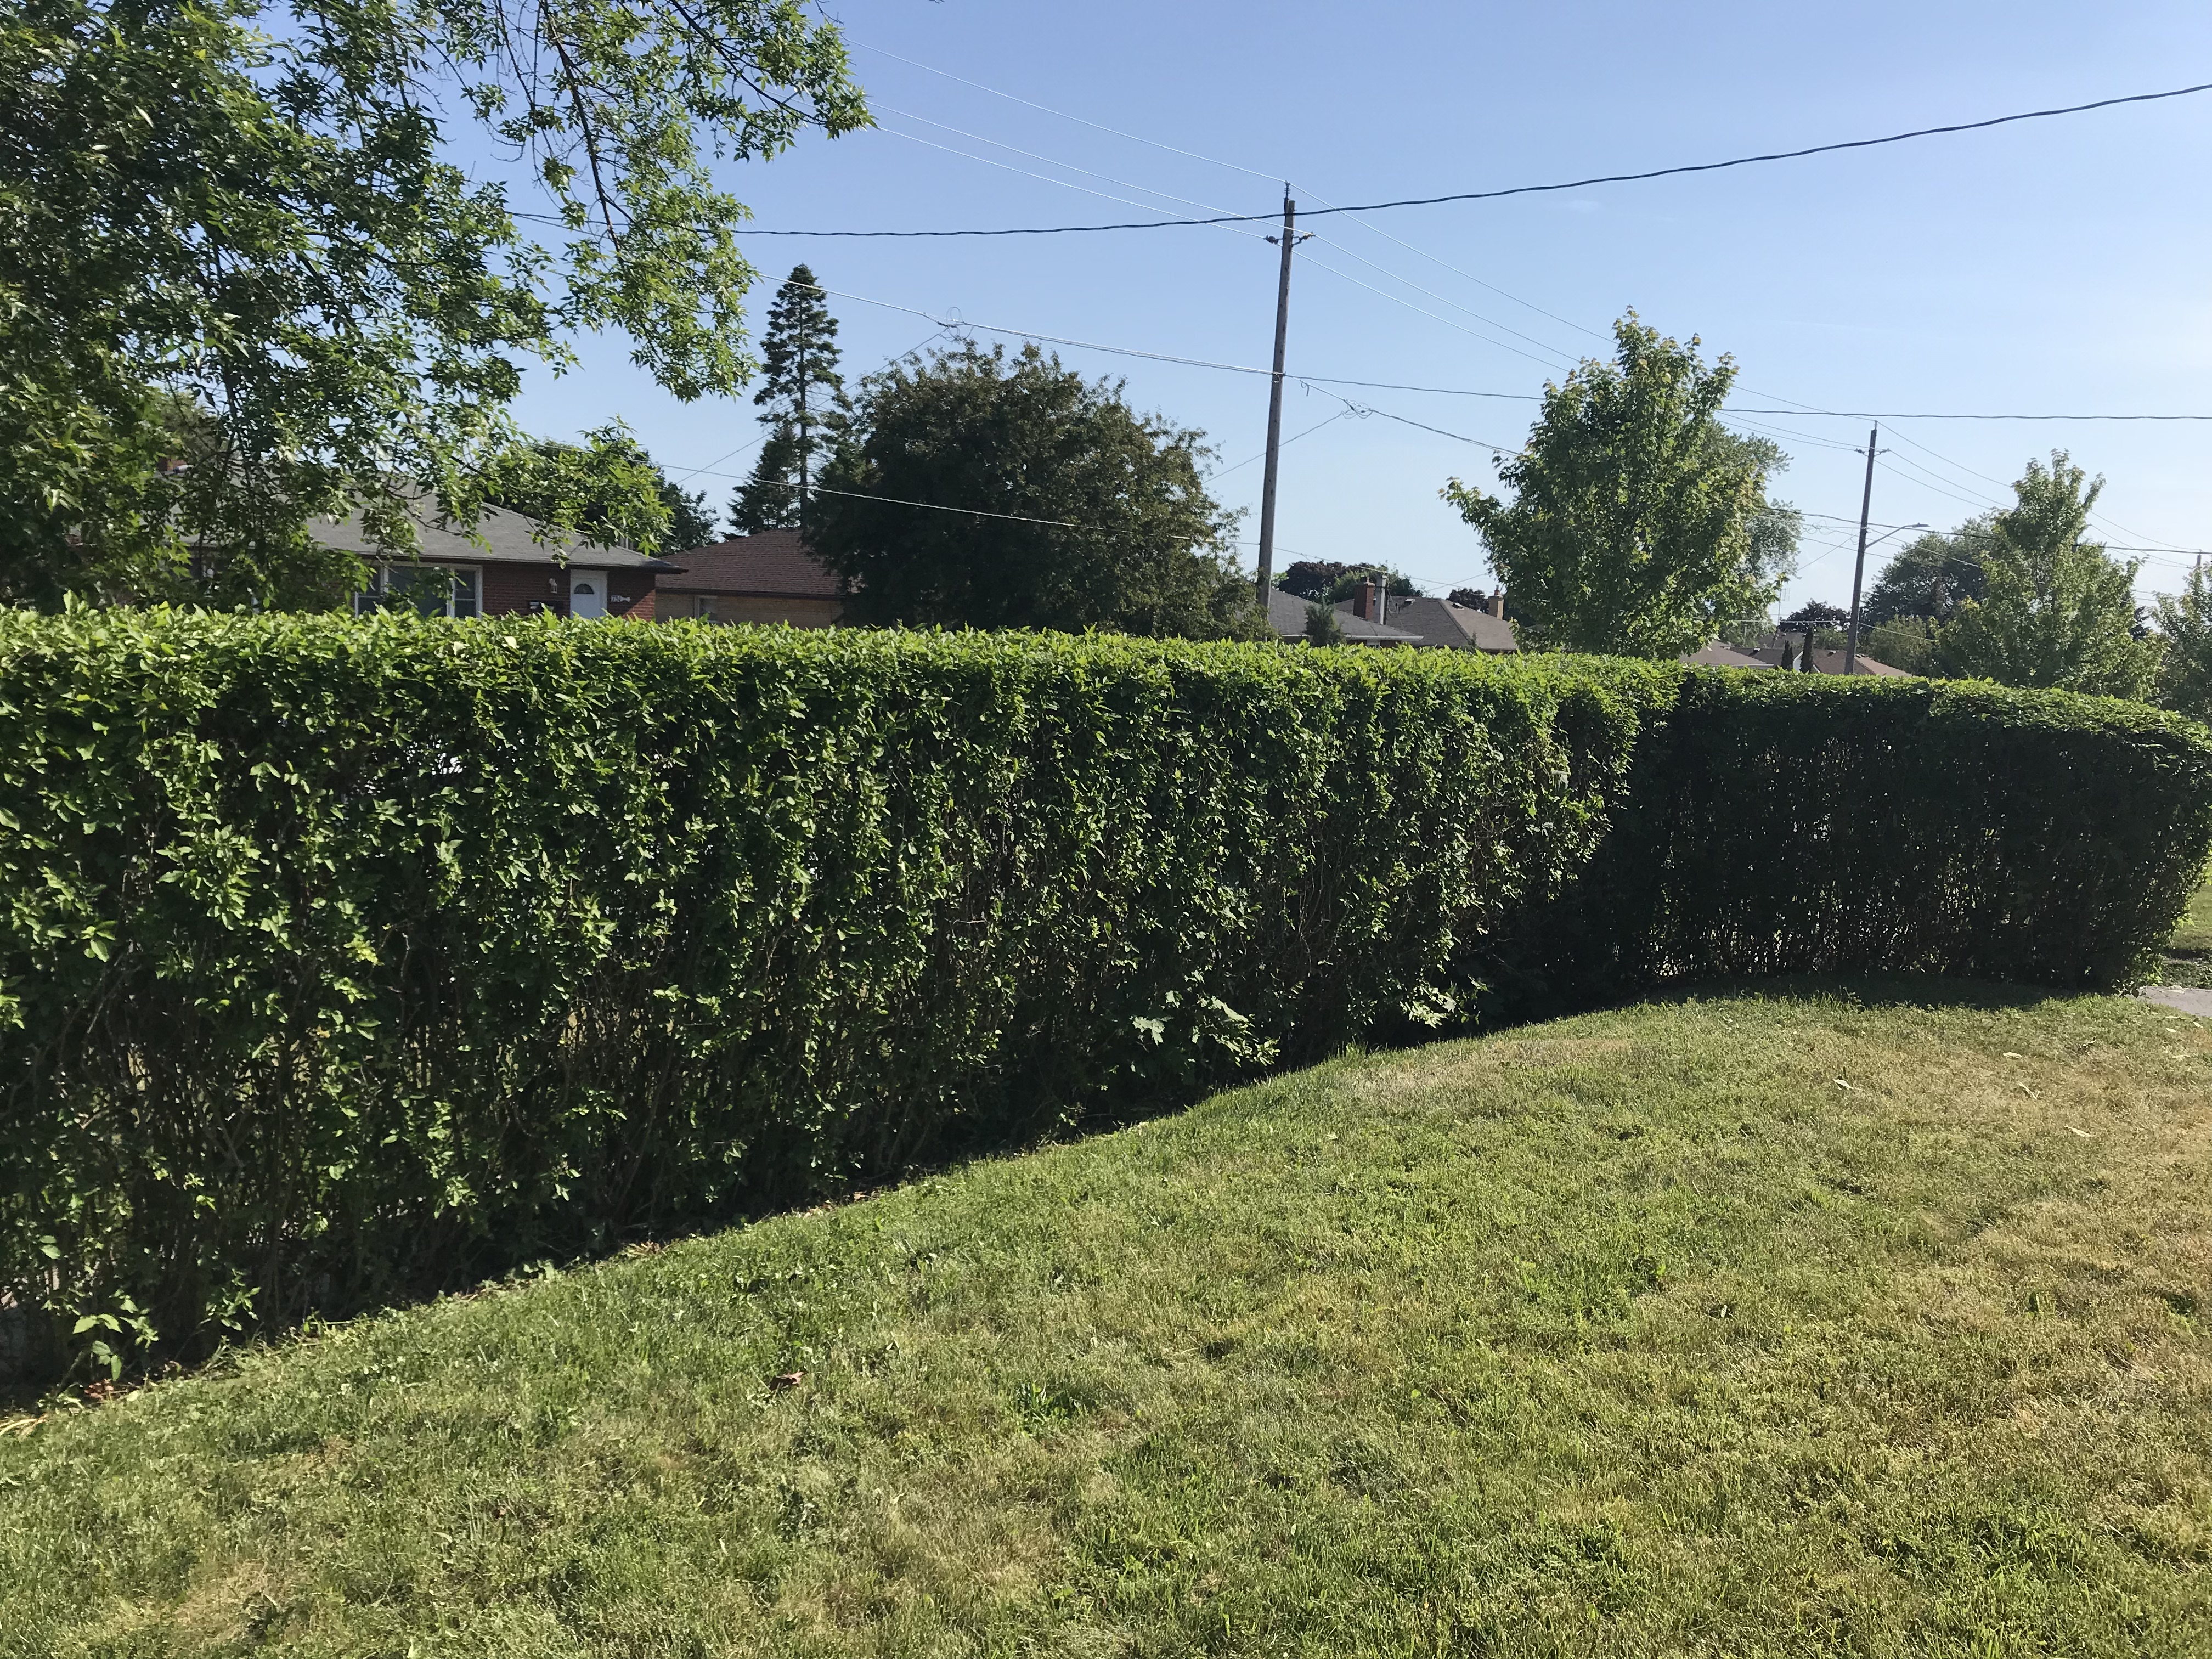 Trimmed Hedge